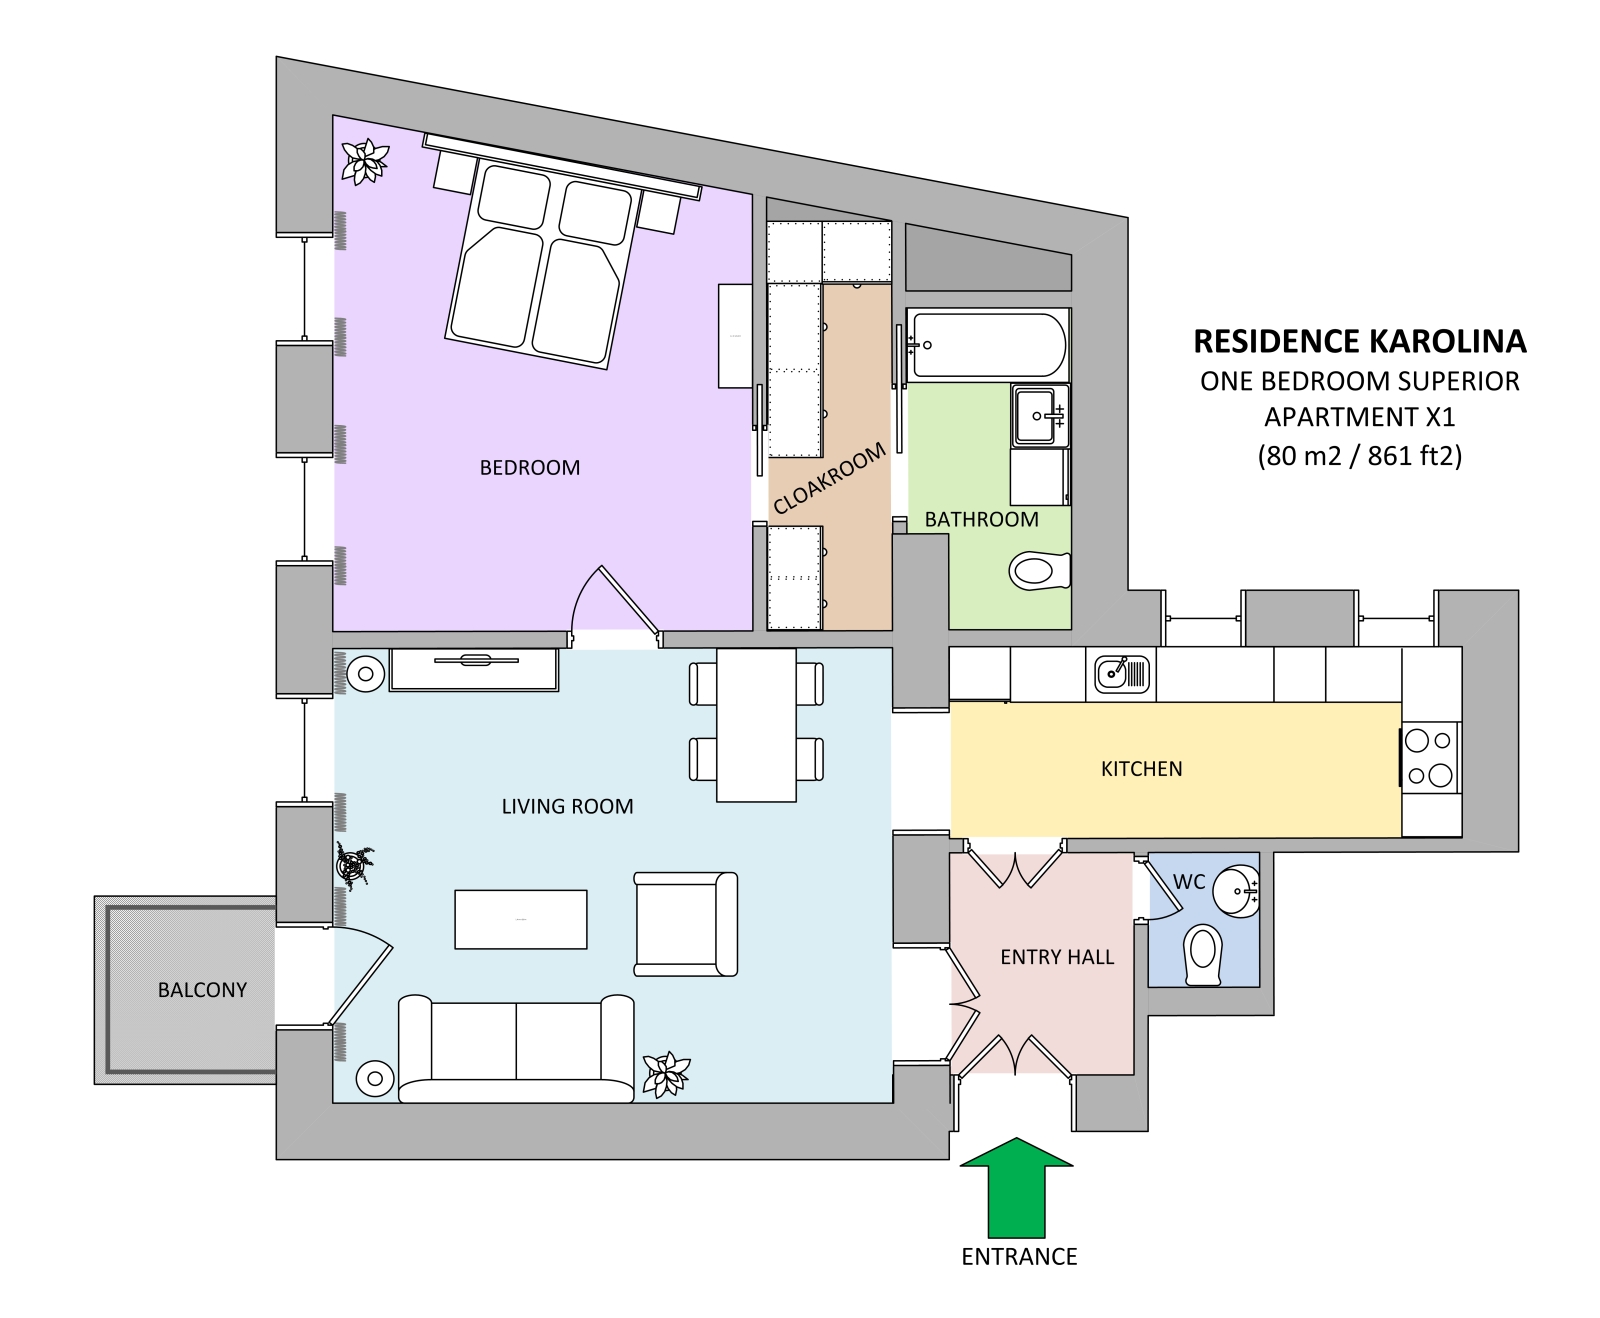 Floorplan of apartment x1 in Residence Karolina in Prague